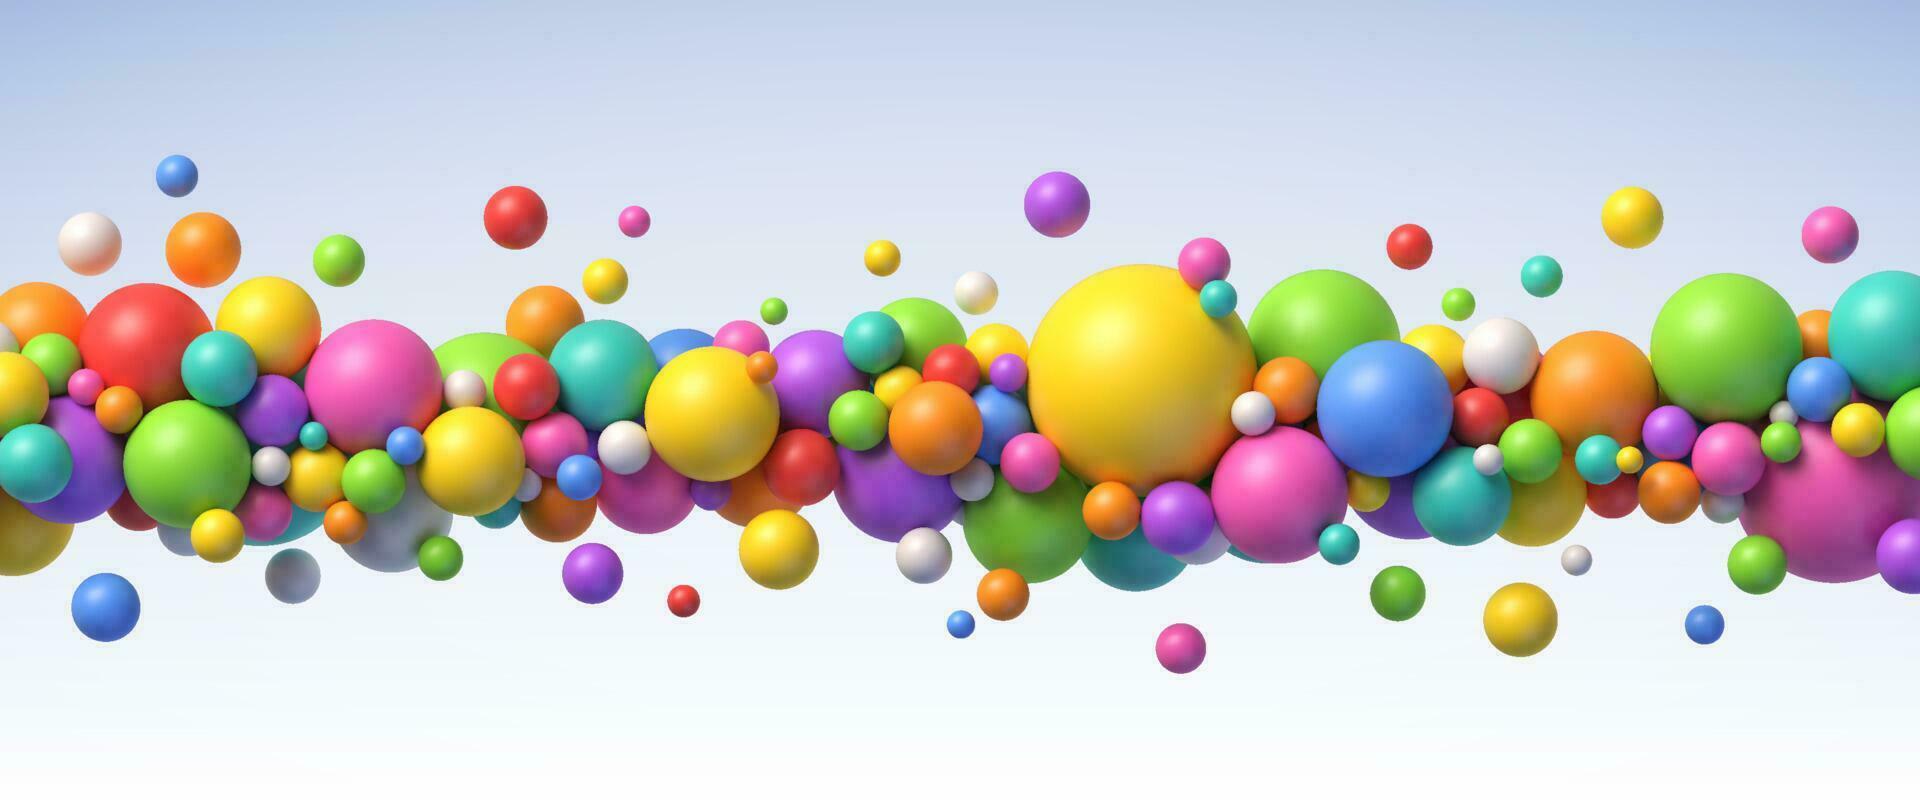 flerfärgad flygande sfärer. abstrakt sammansättning med färgrik bollar i annorlunda storlekar. realistisk vektor bakgrund